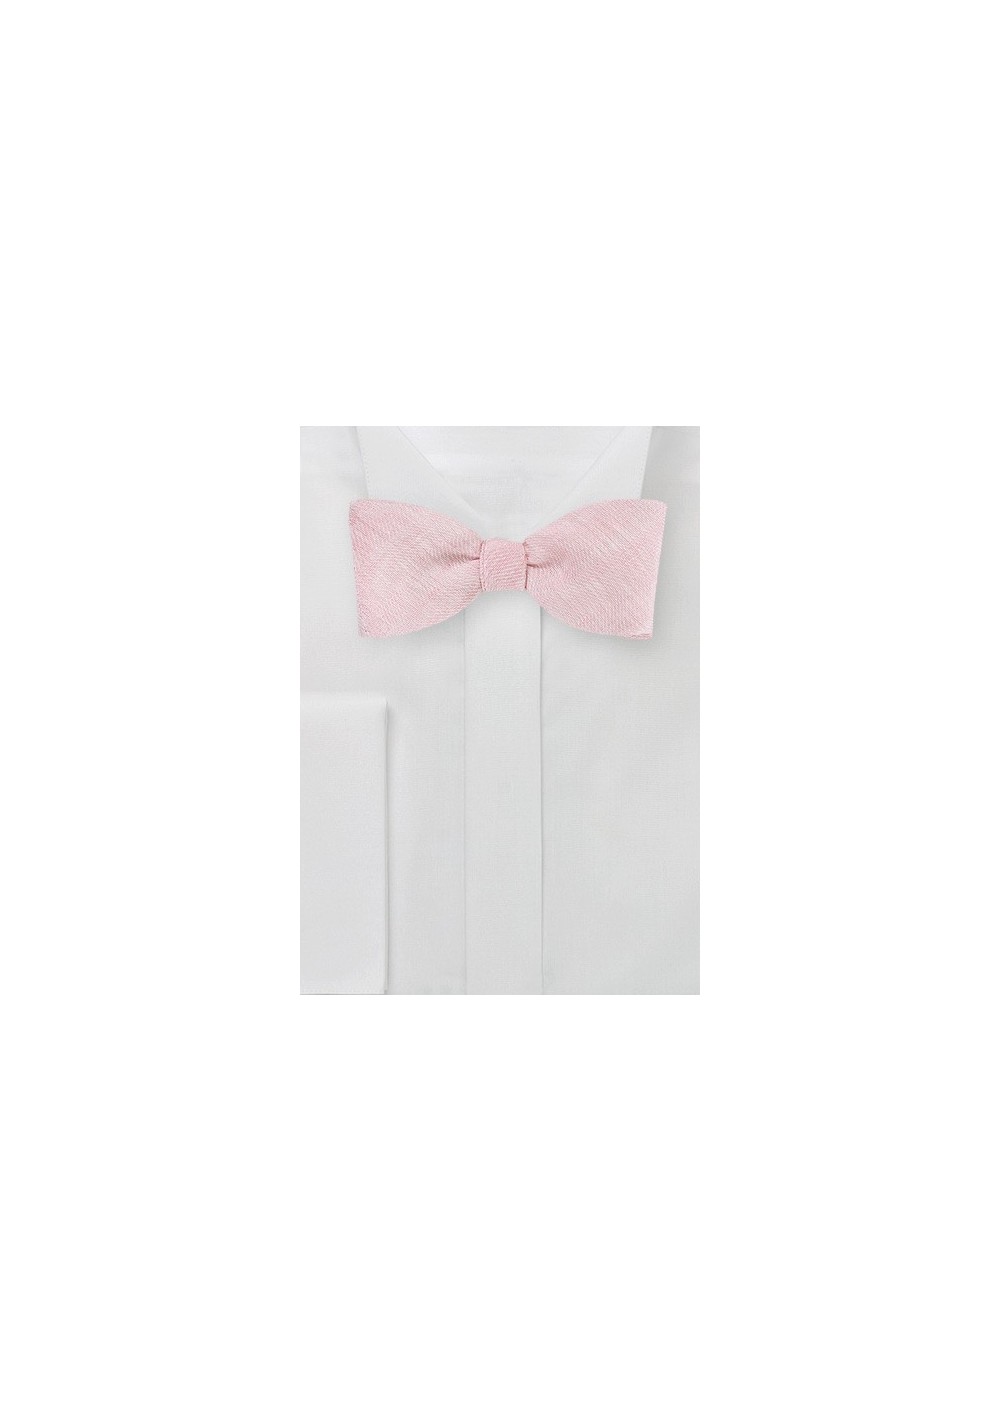 Linen Bow Tie in Petal Pink